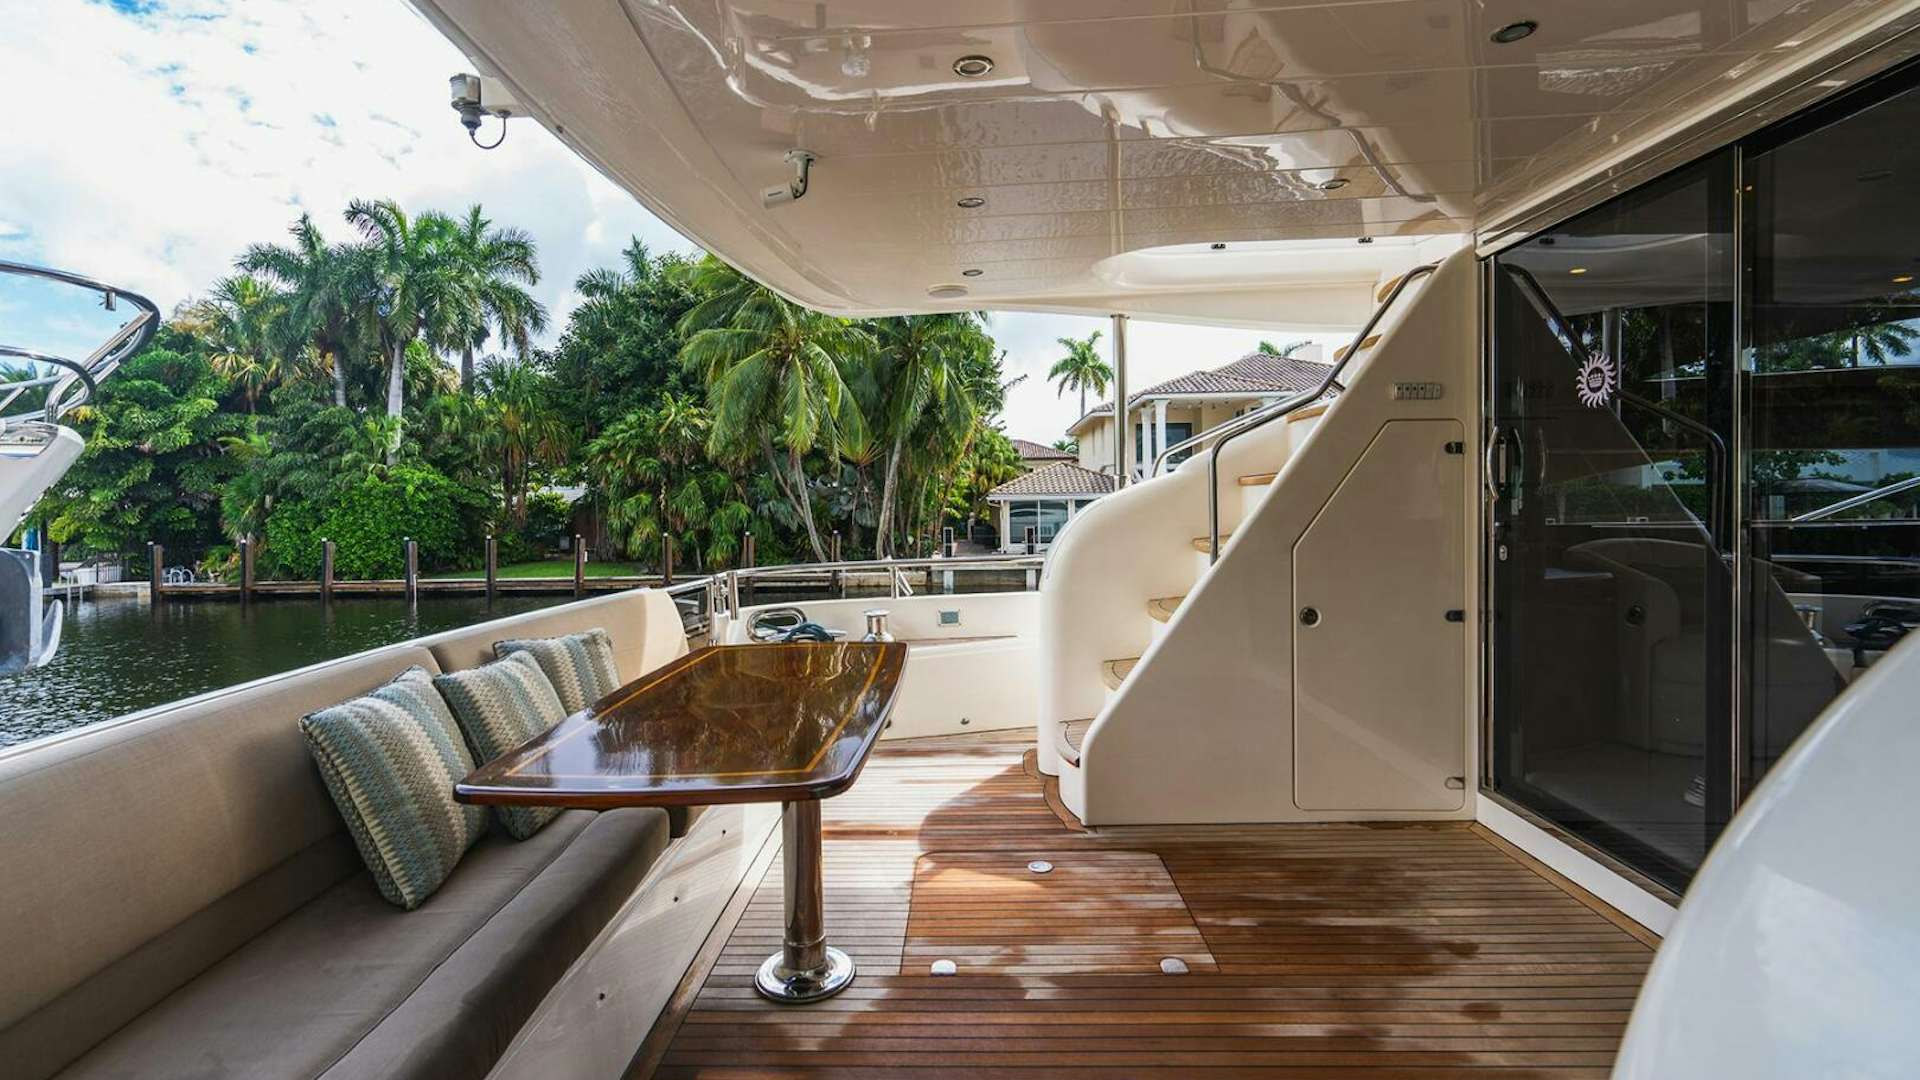 Empire sun
Yacht for Sale